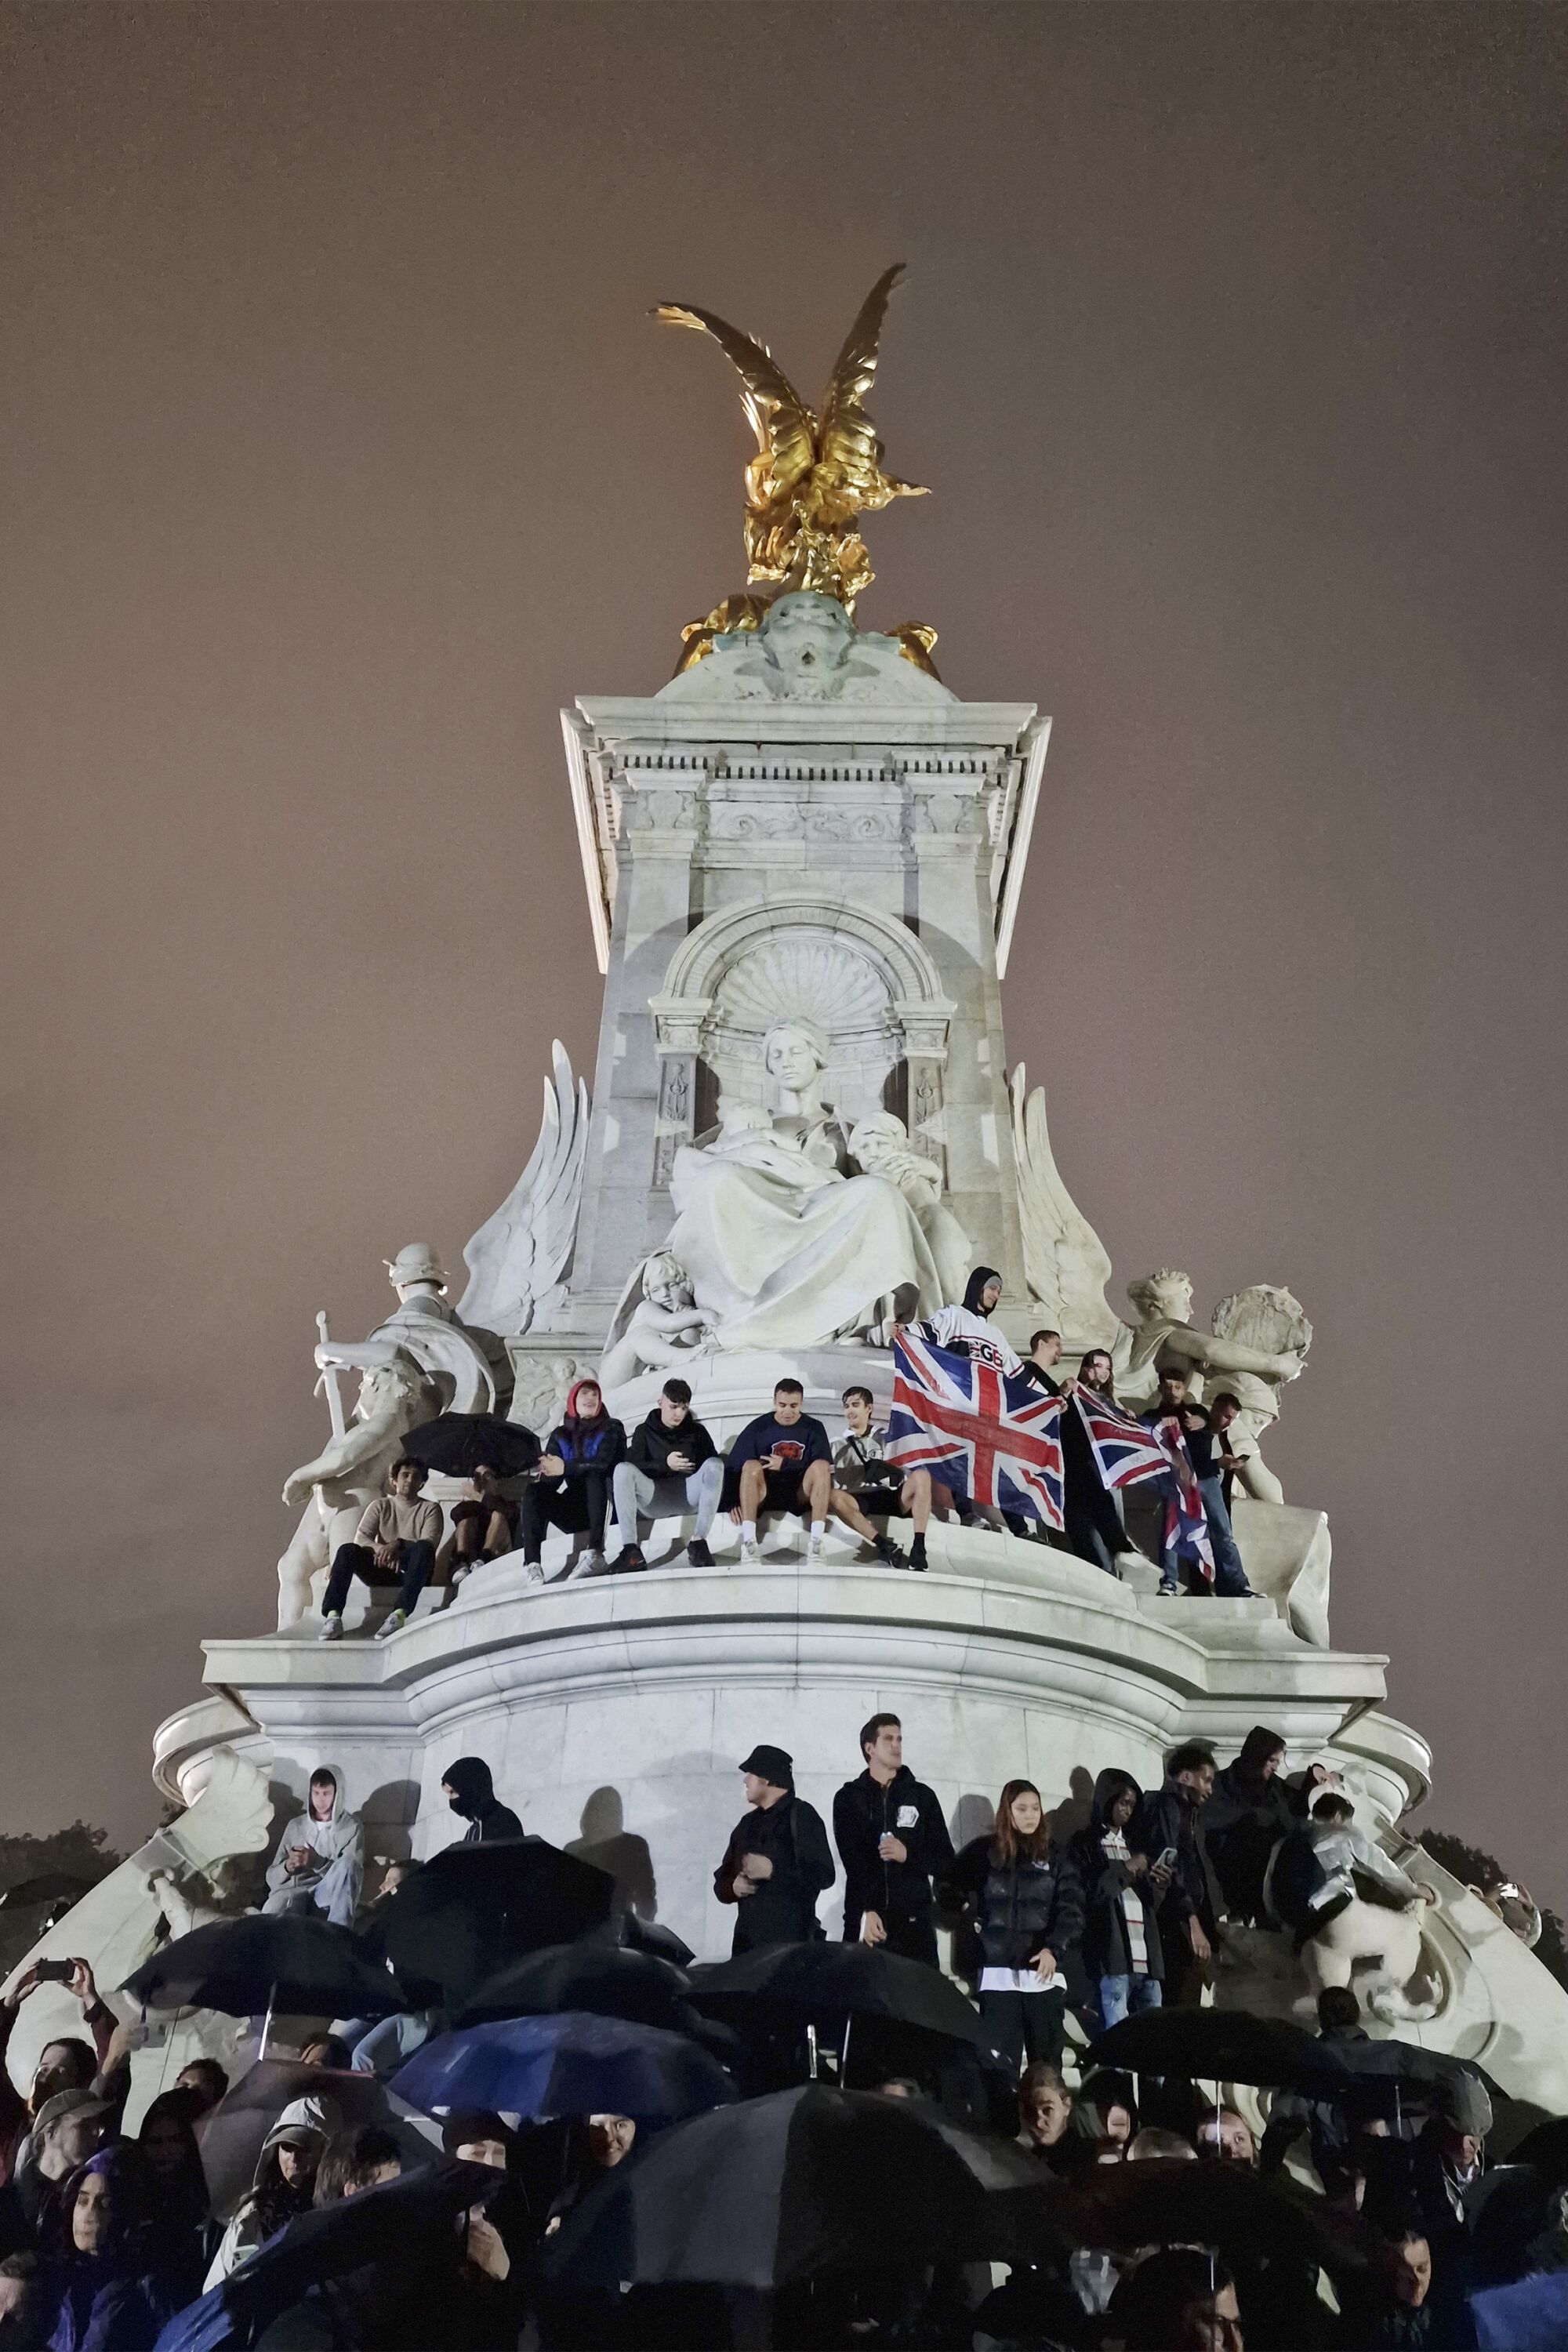 Kraliçe II. Elizabeth'in bugün ölümünün ardından Buckingham Sarayı önündeki Kraliçe Victoria Anıtı'nda kalabalıklar toplandı.